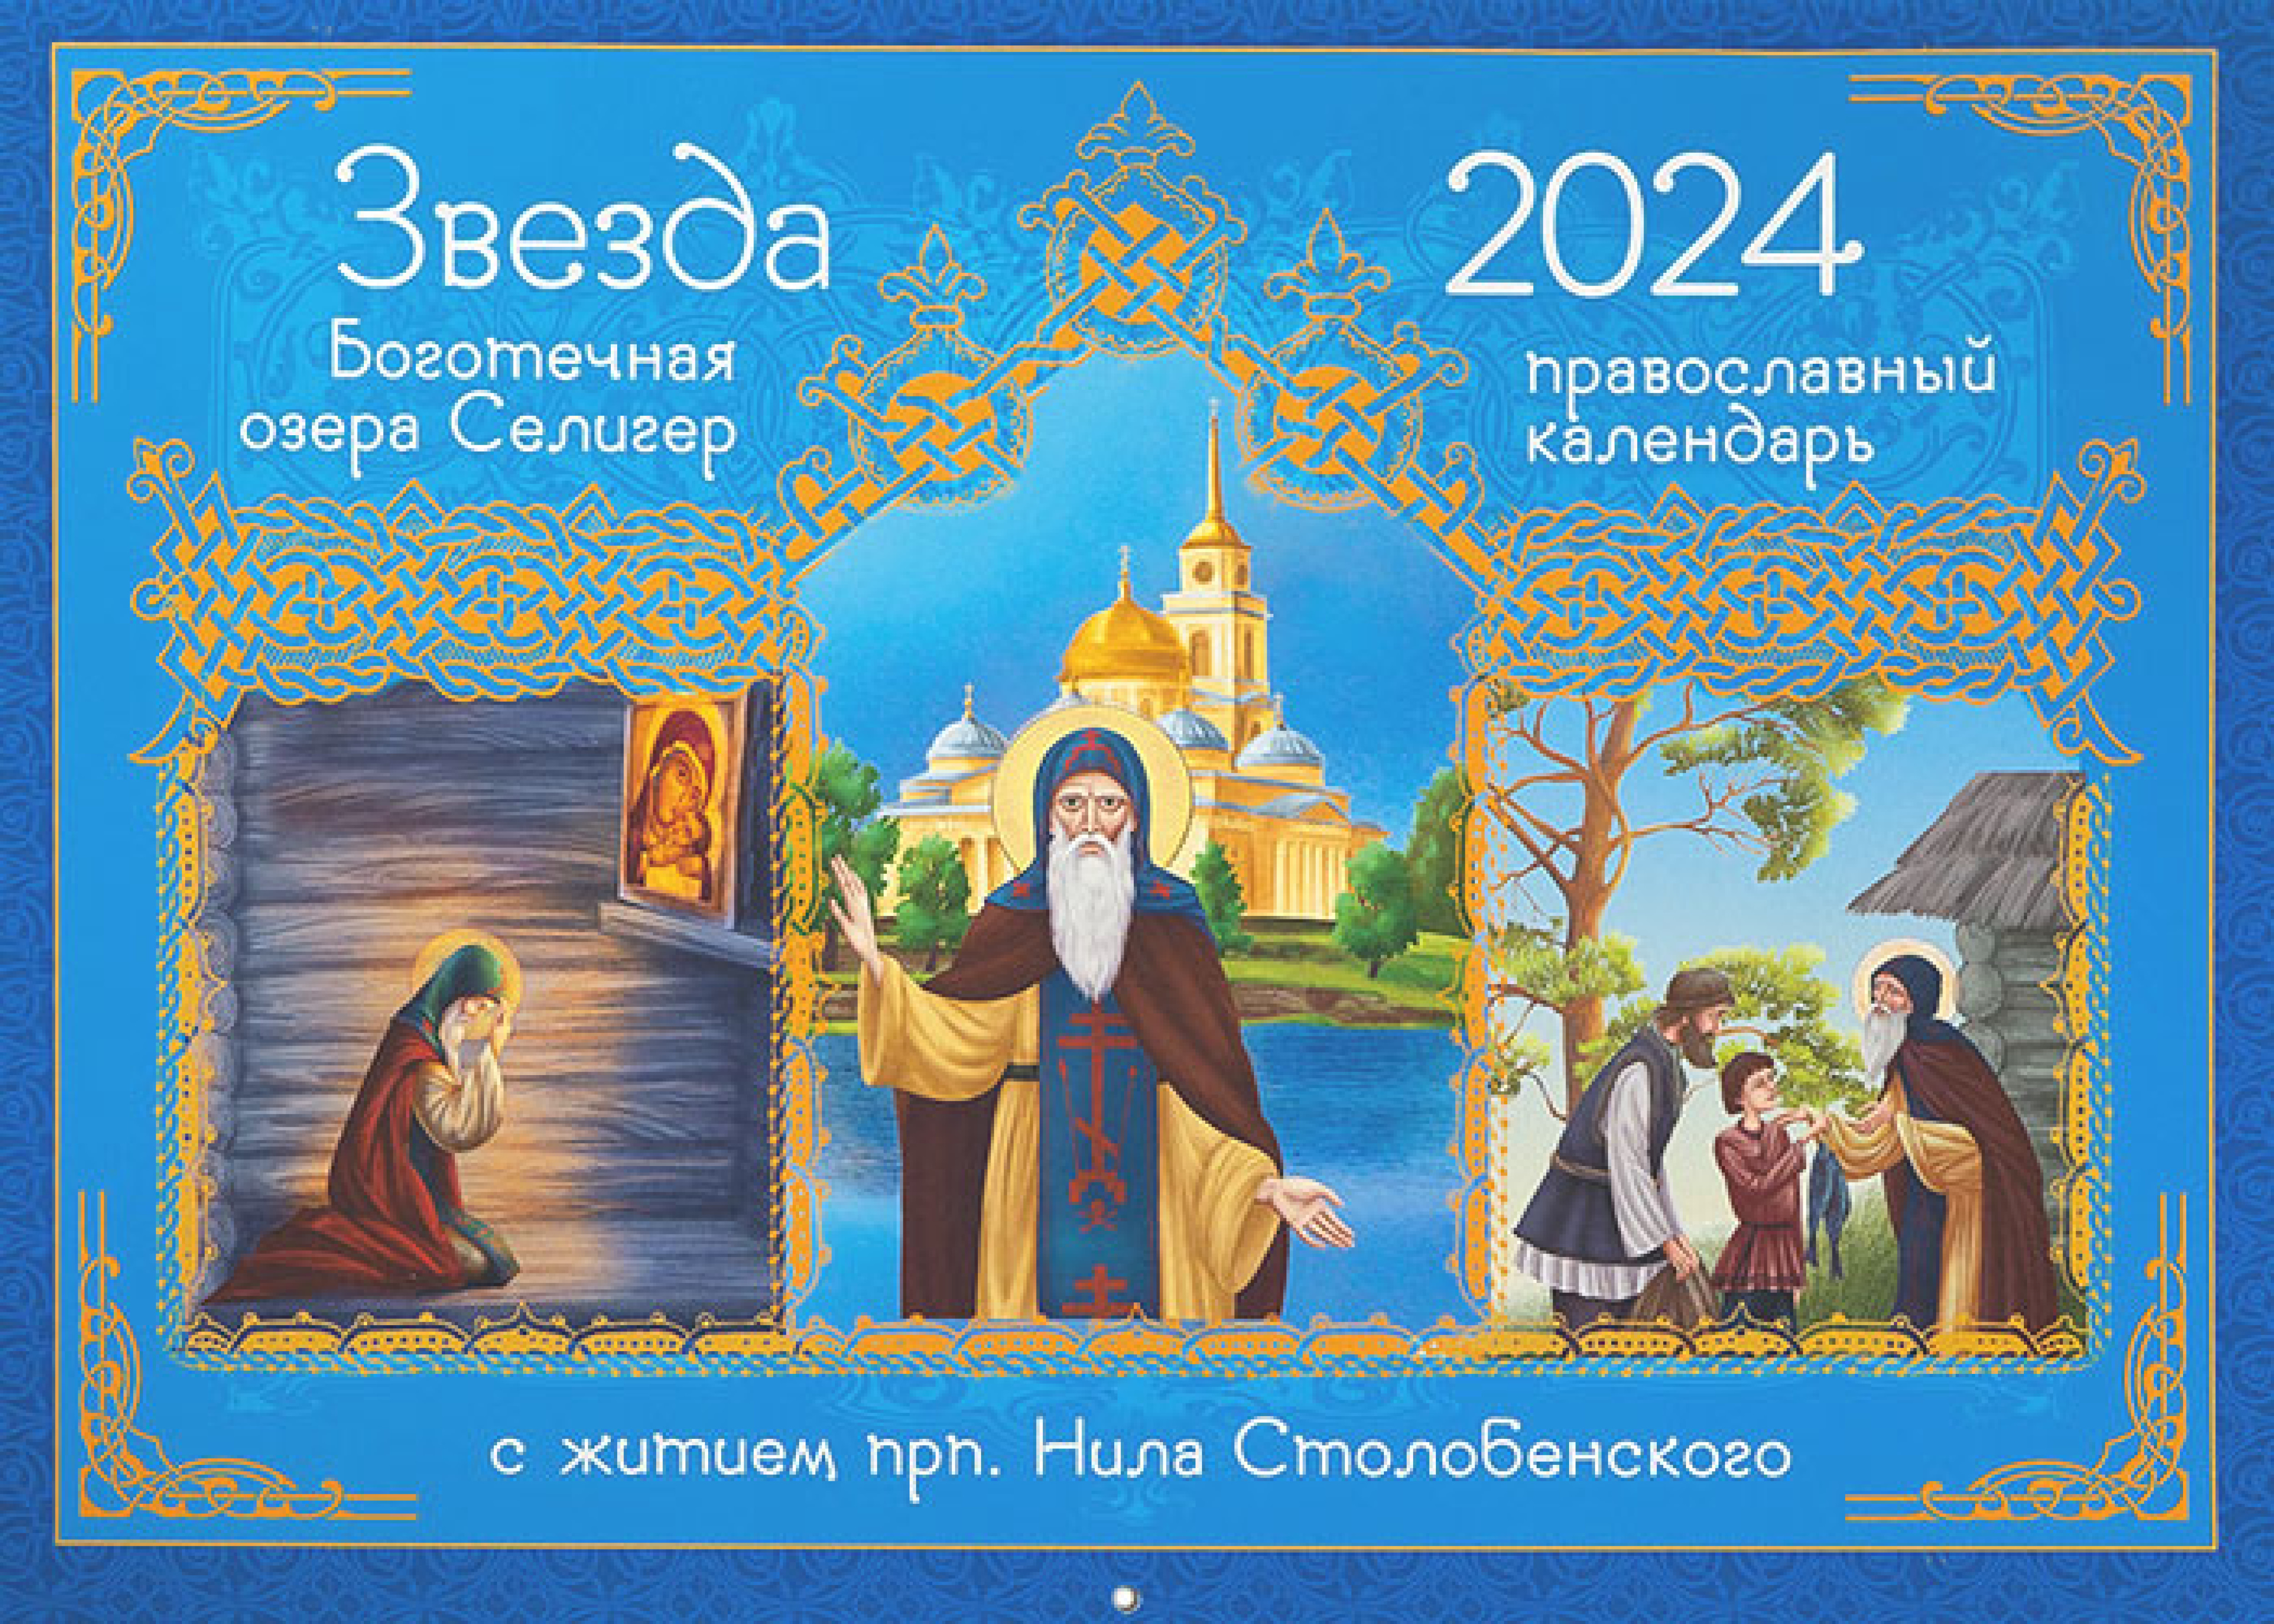 13 апреля 2024 православный календарь. Православный календарь на 2024. Православный календарь книга. Православный календарь на 2024 год. Православные праздники в 2024 году.